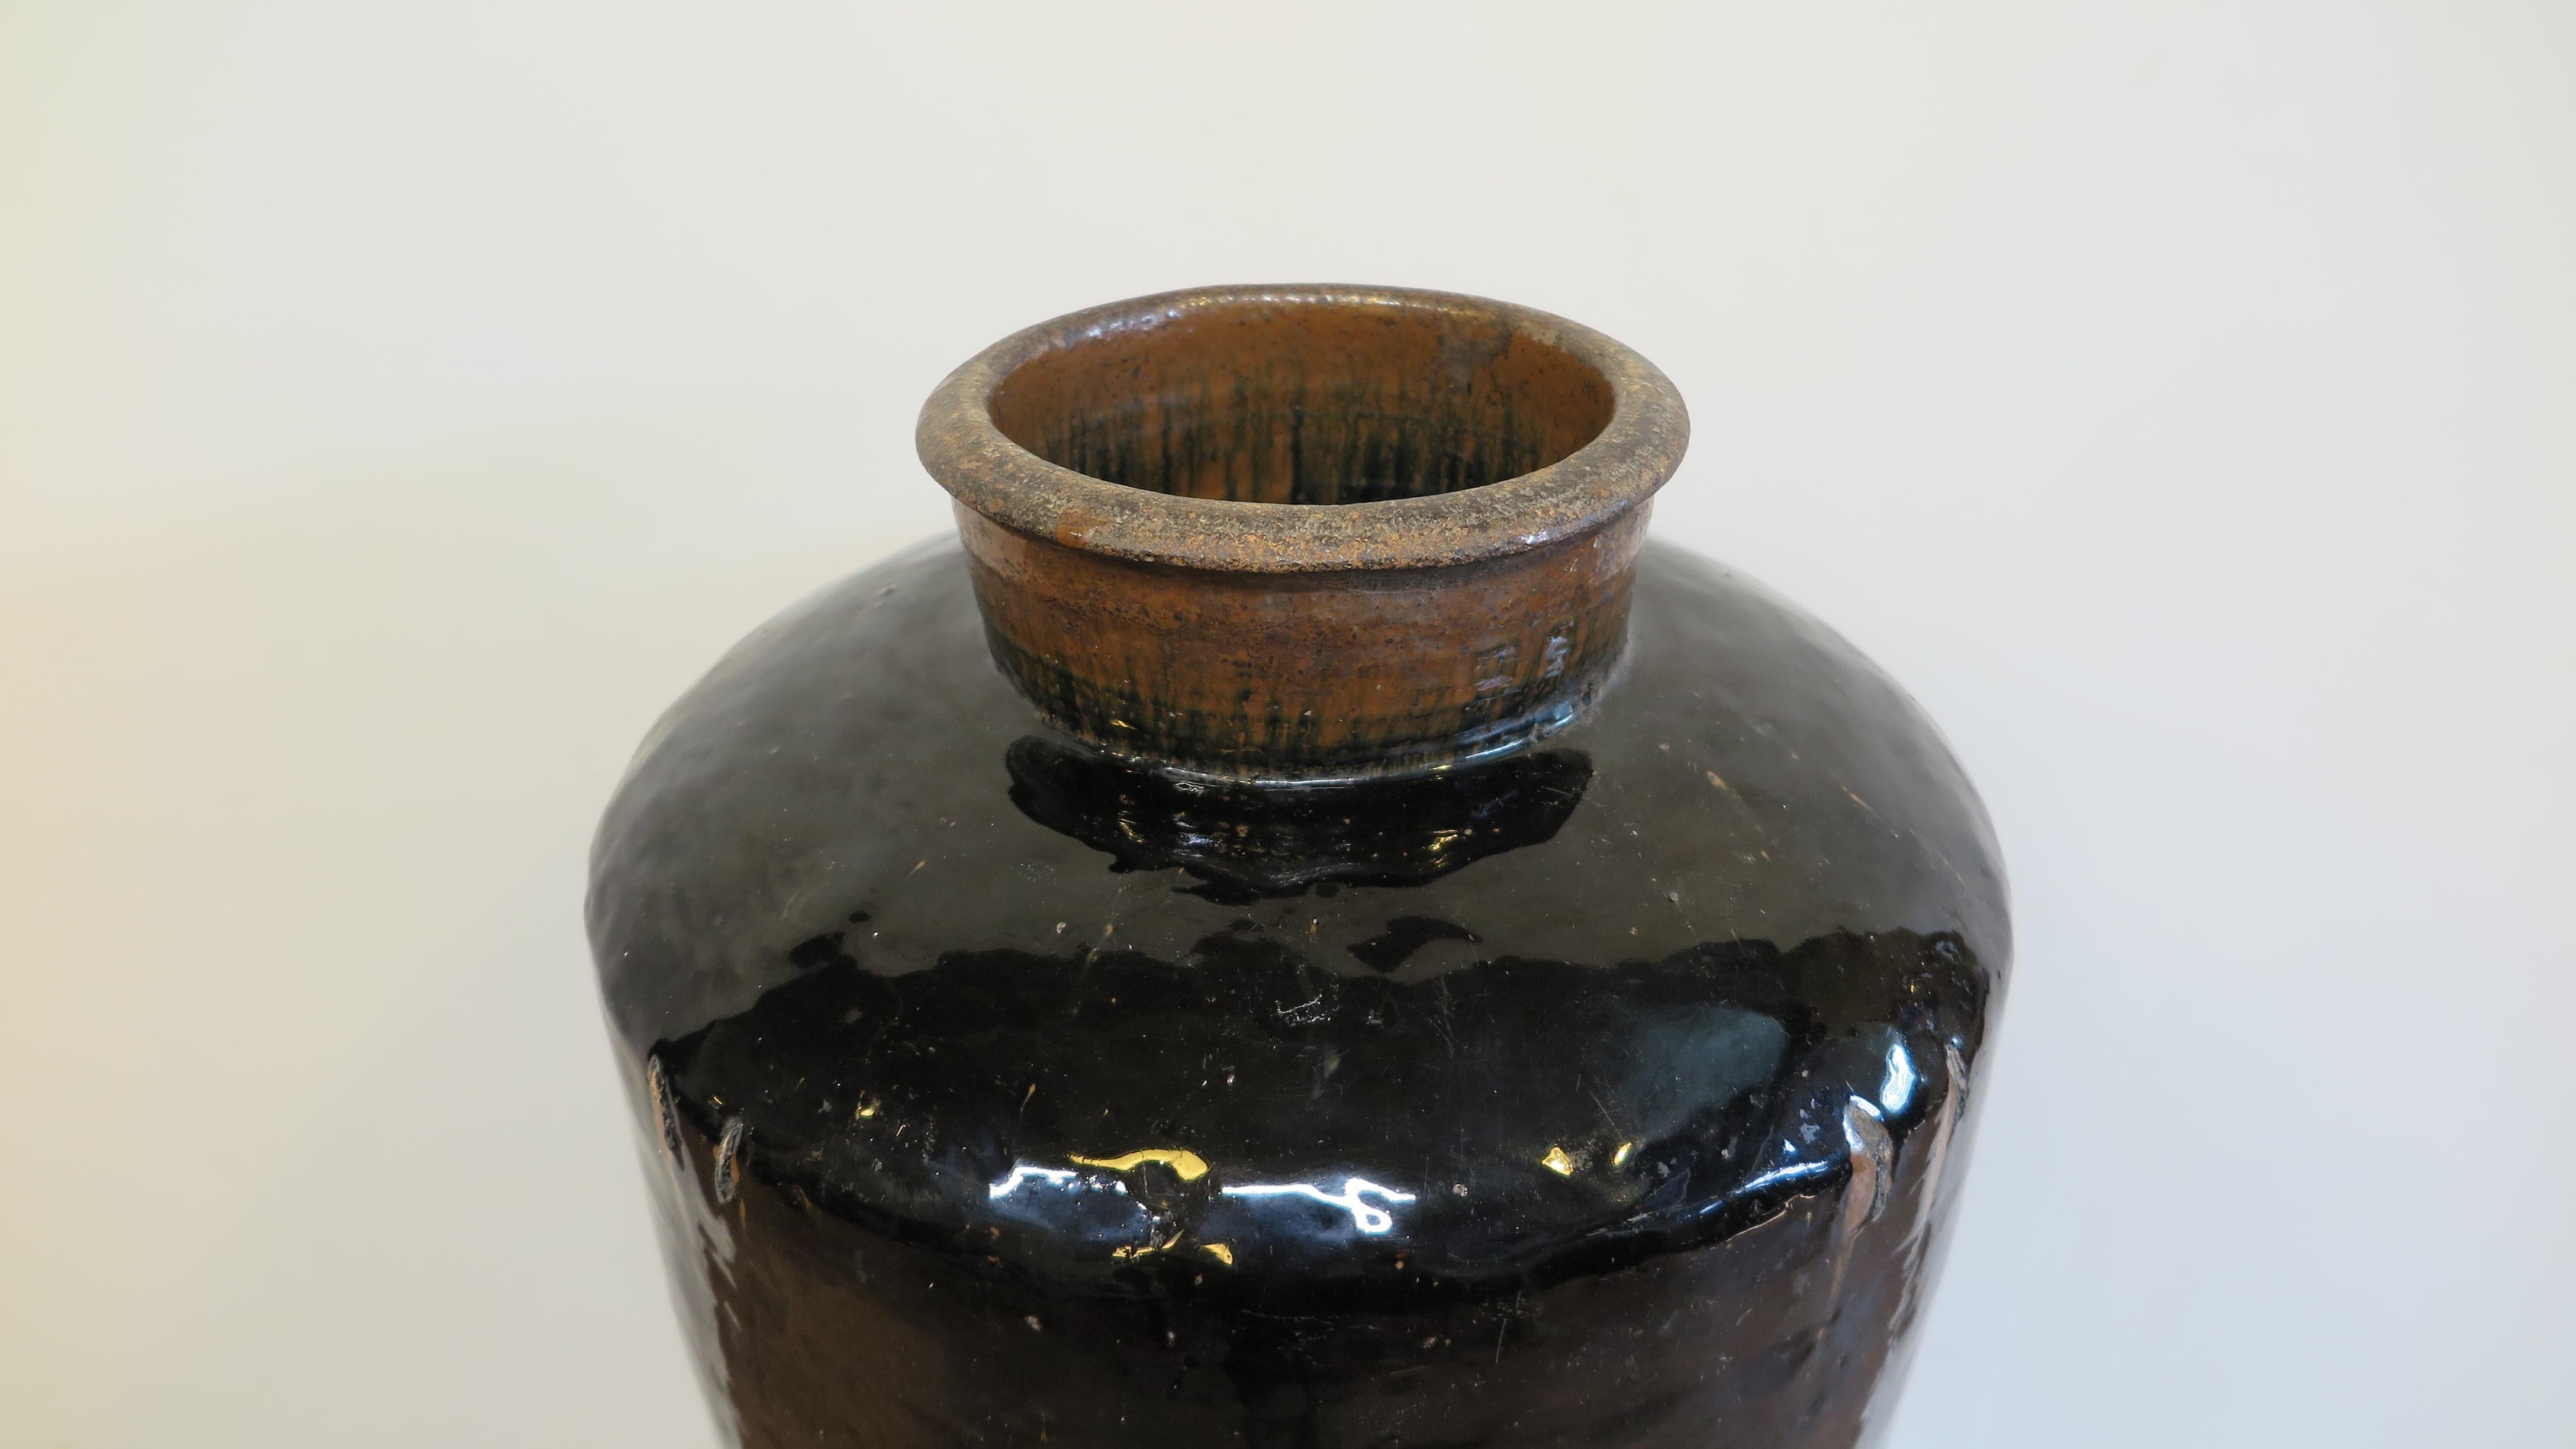 Vorratsgefäß aus chinesischer Steingutware. großes Vorratsgefäß aus Steinzeug aus dem 19. Jahrhundert mit schwarzer Glasur. Ausgezeichnete Form mit breiter, erhabener Mündung mit ausgestelltem Randausguss auf gewölbtem, kantigem Oberteil, das sich